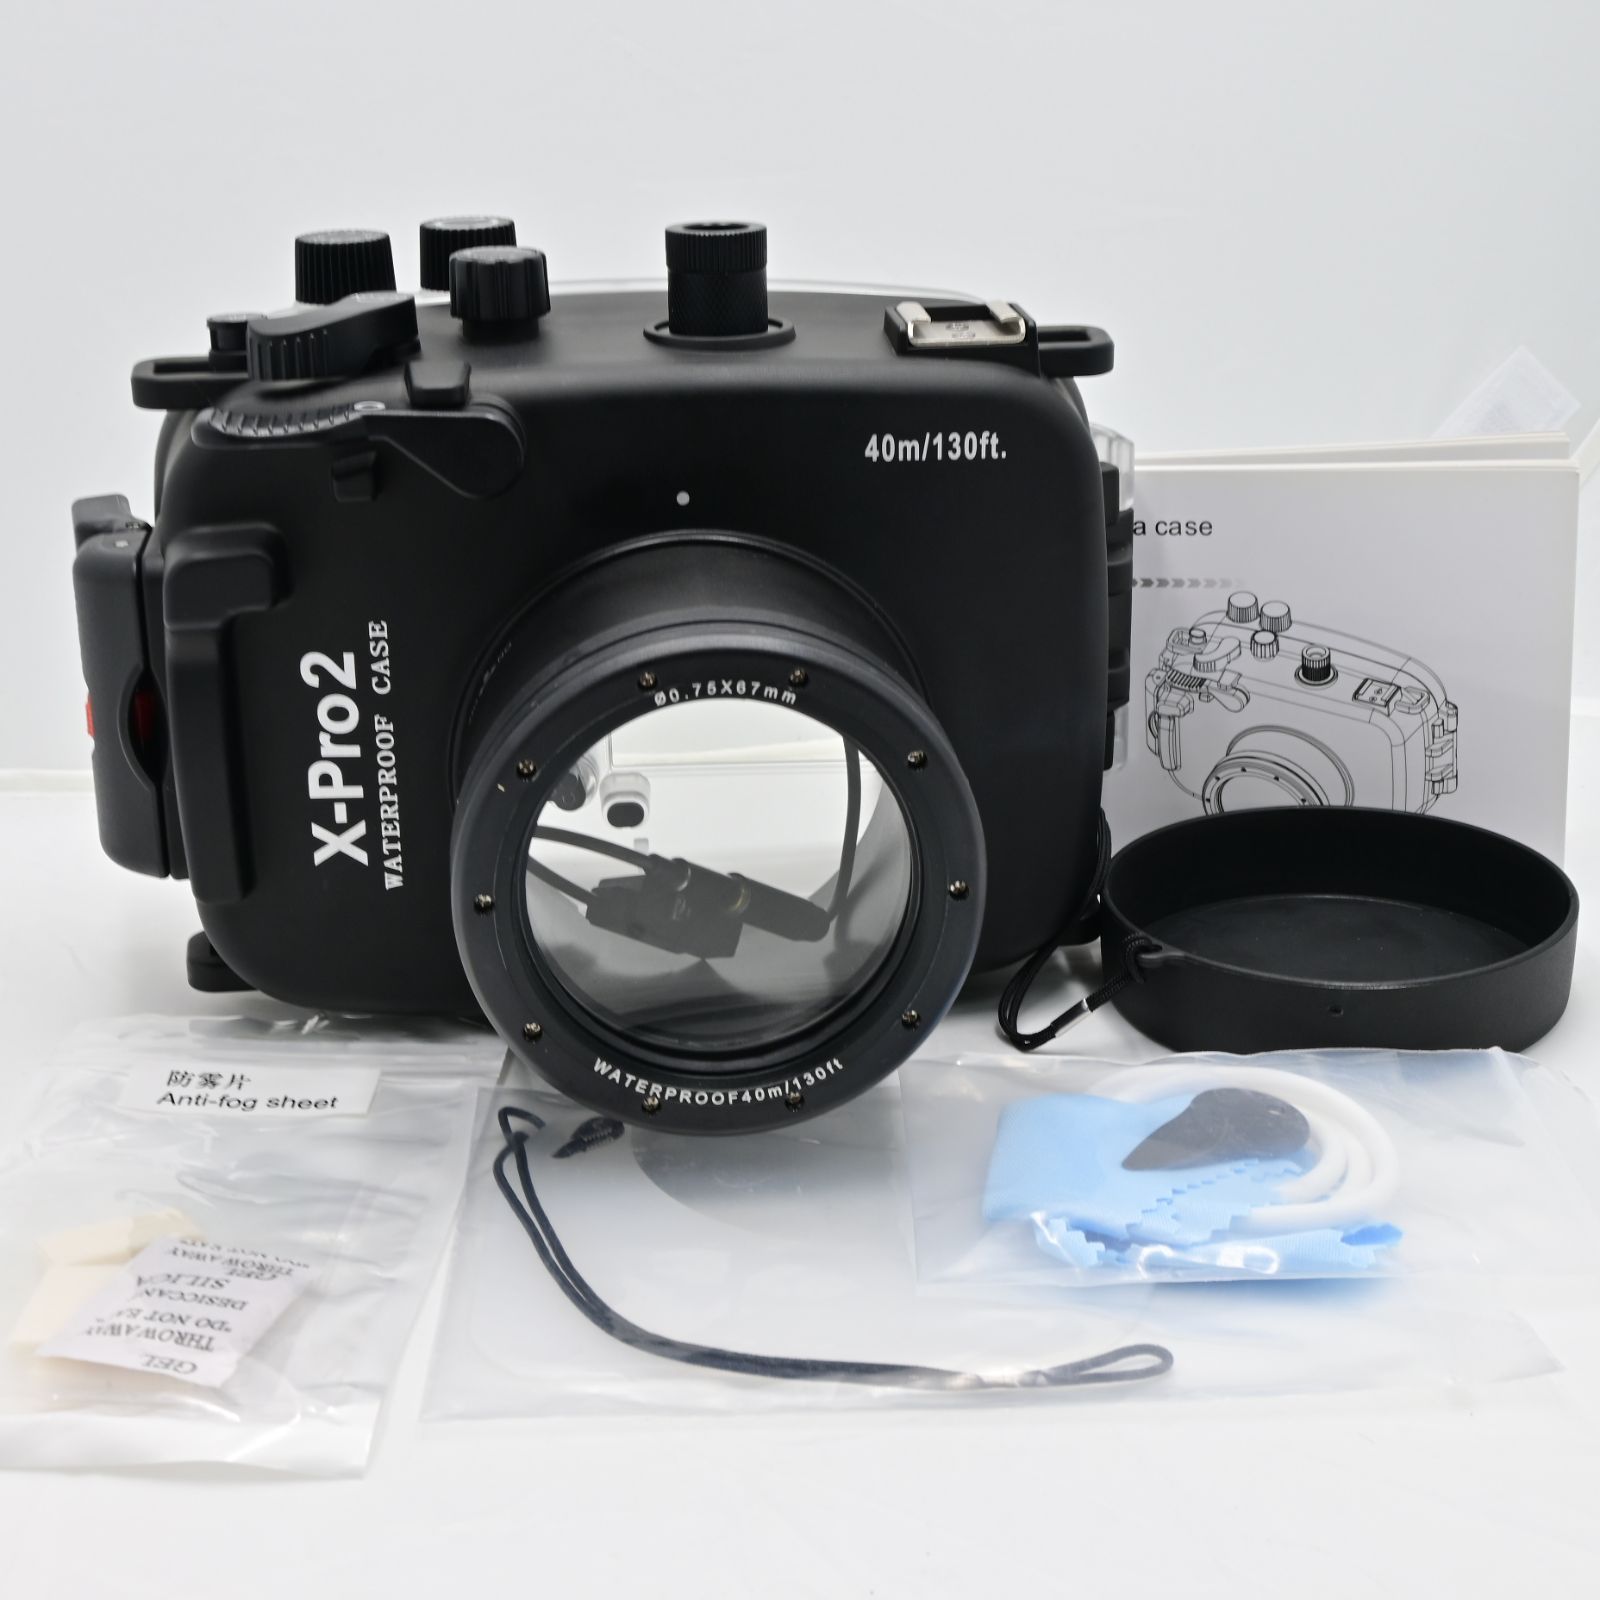 ★新品級★　Meikon 40m 水中防水ハウジングケース 富士フイルム X-Pro2 16-50mm/35mm レンズカメラ用